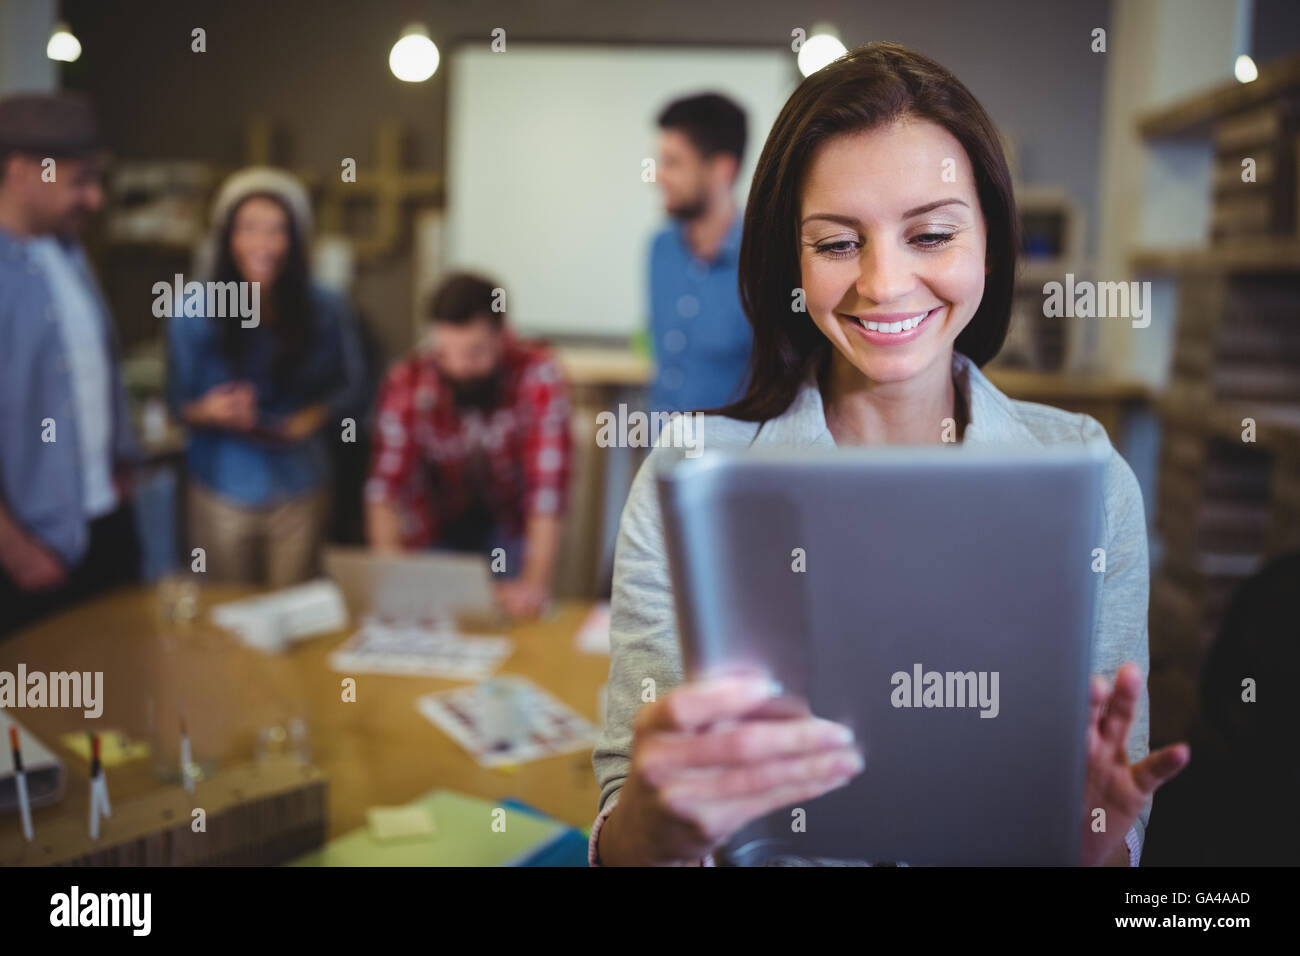 Businesswoman smiling lors de l'utilisation de digital tablet Banque D'Images